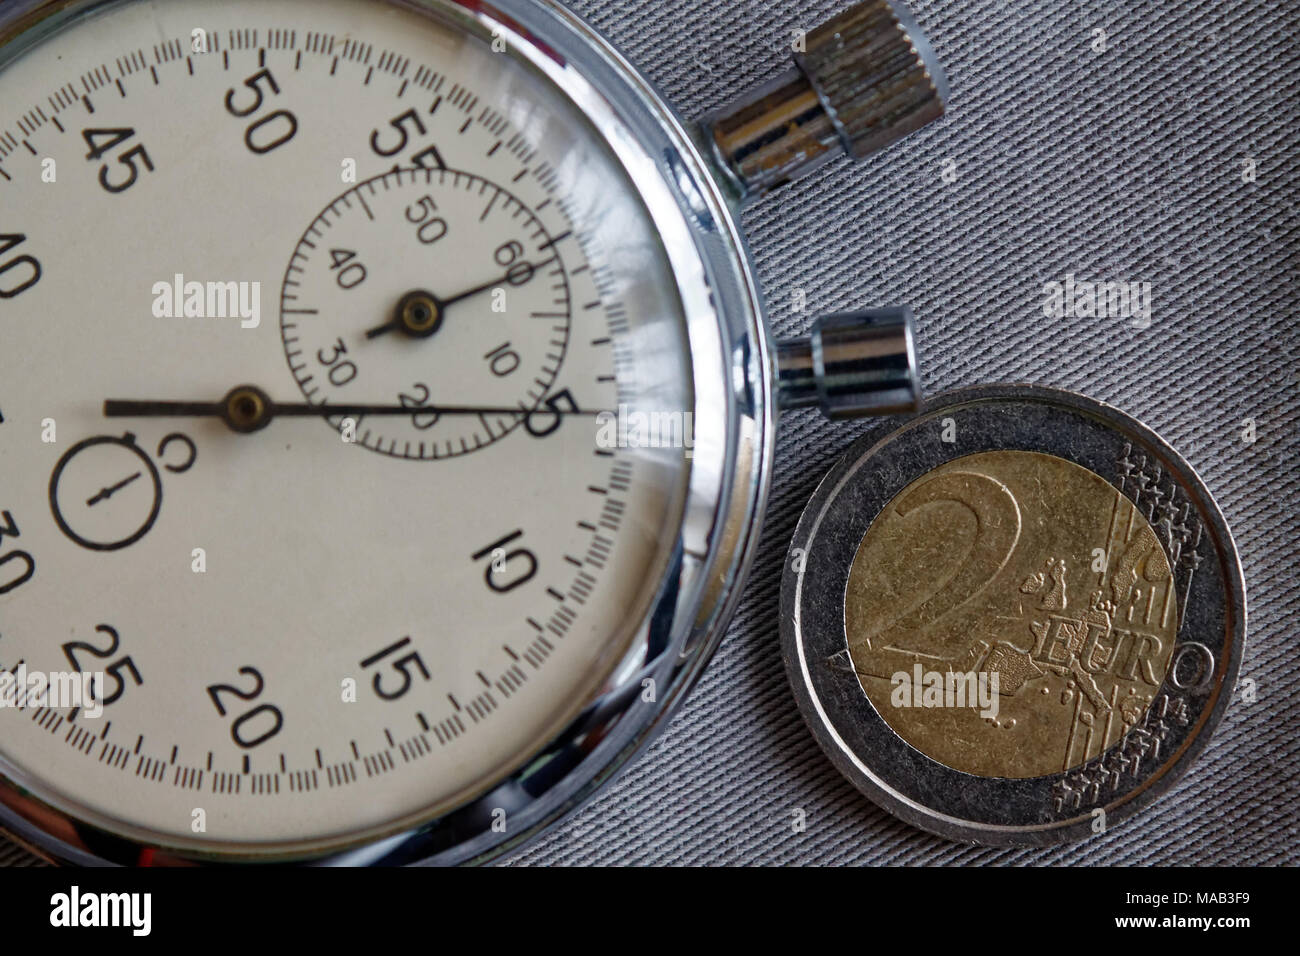 Pièce en euros d'une valeur nominale de deux euro et chronomètre sur toile Denim gris - business background Banque D'Images